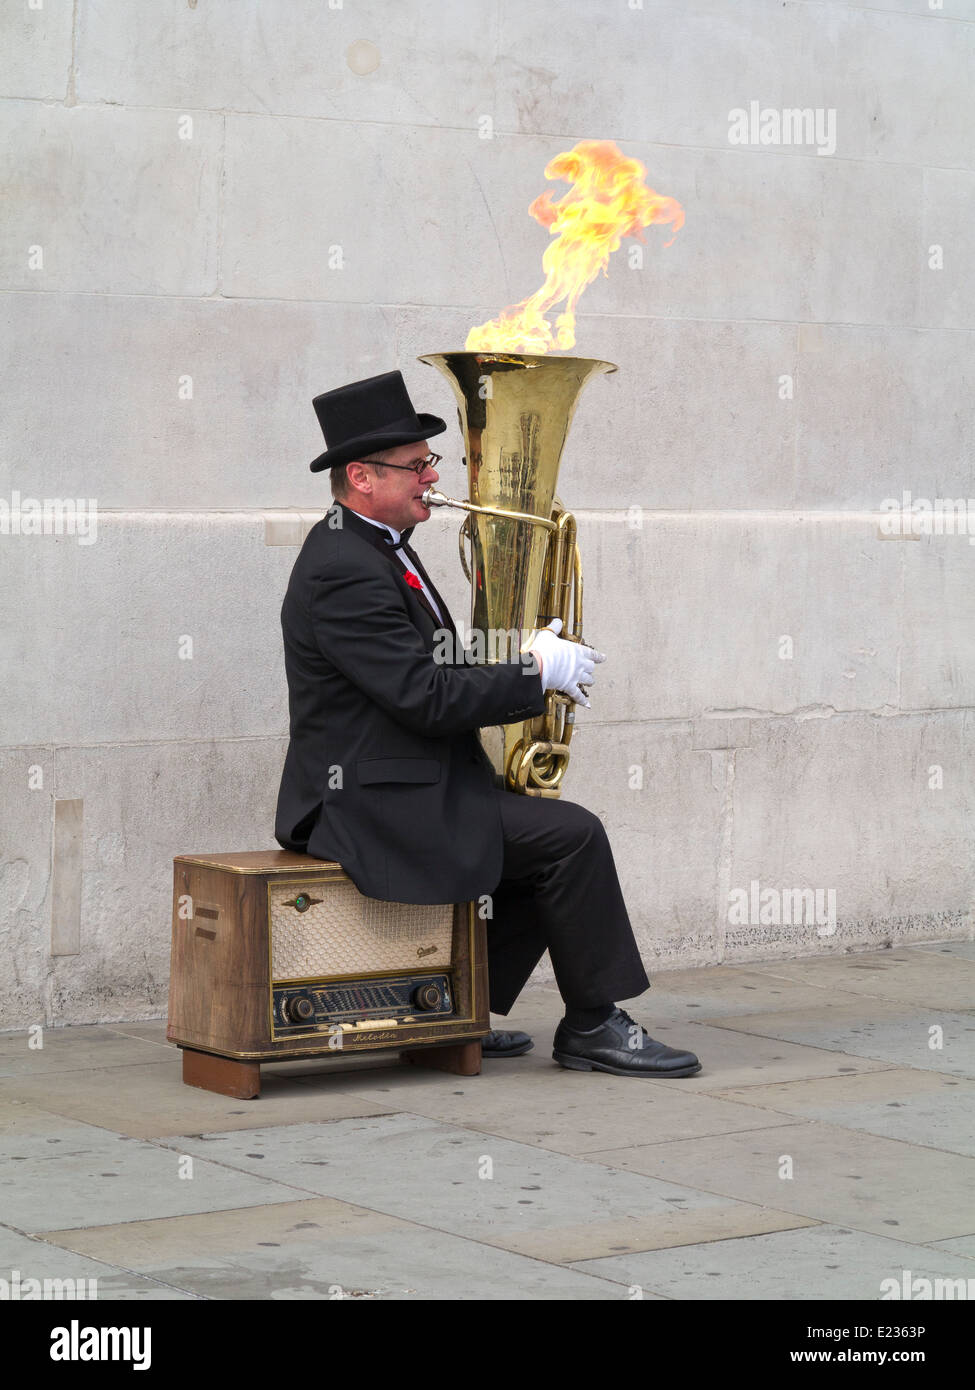 Musicien ambulant, Christopher Werkowicz jouant son flaming tuba assis sur une vieille radio contre un mur de pierre Londres Angleterre Banque D'Images